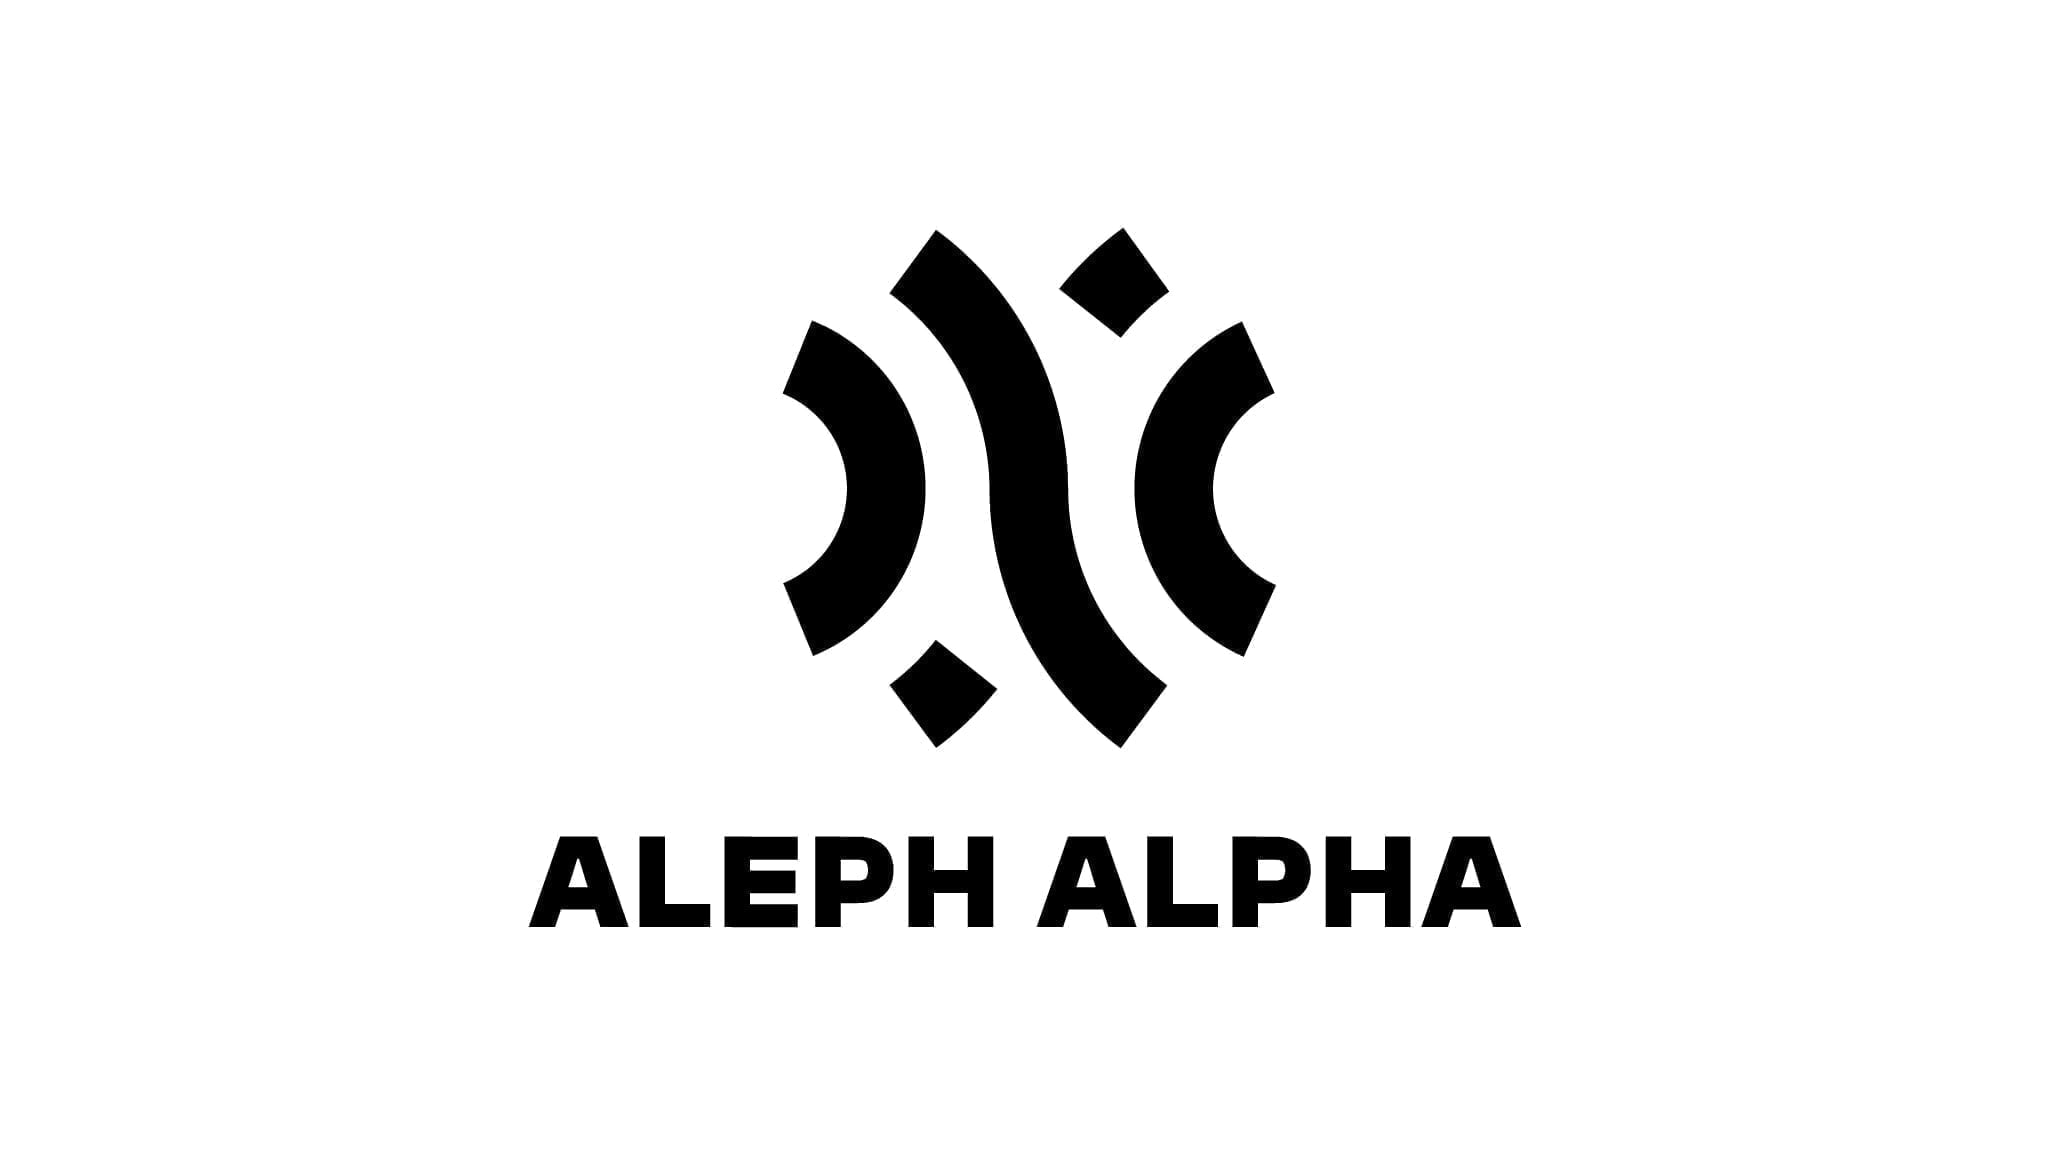 Kritik an Berichterstattung zu Aleph Alphas 500-Millionen-